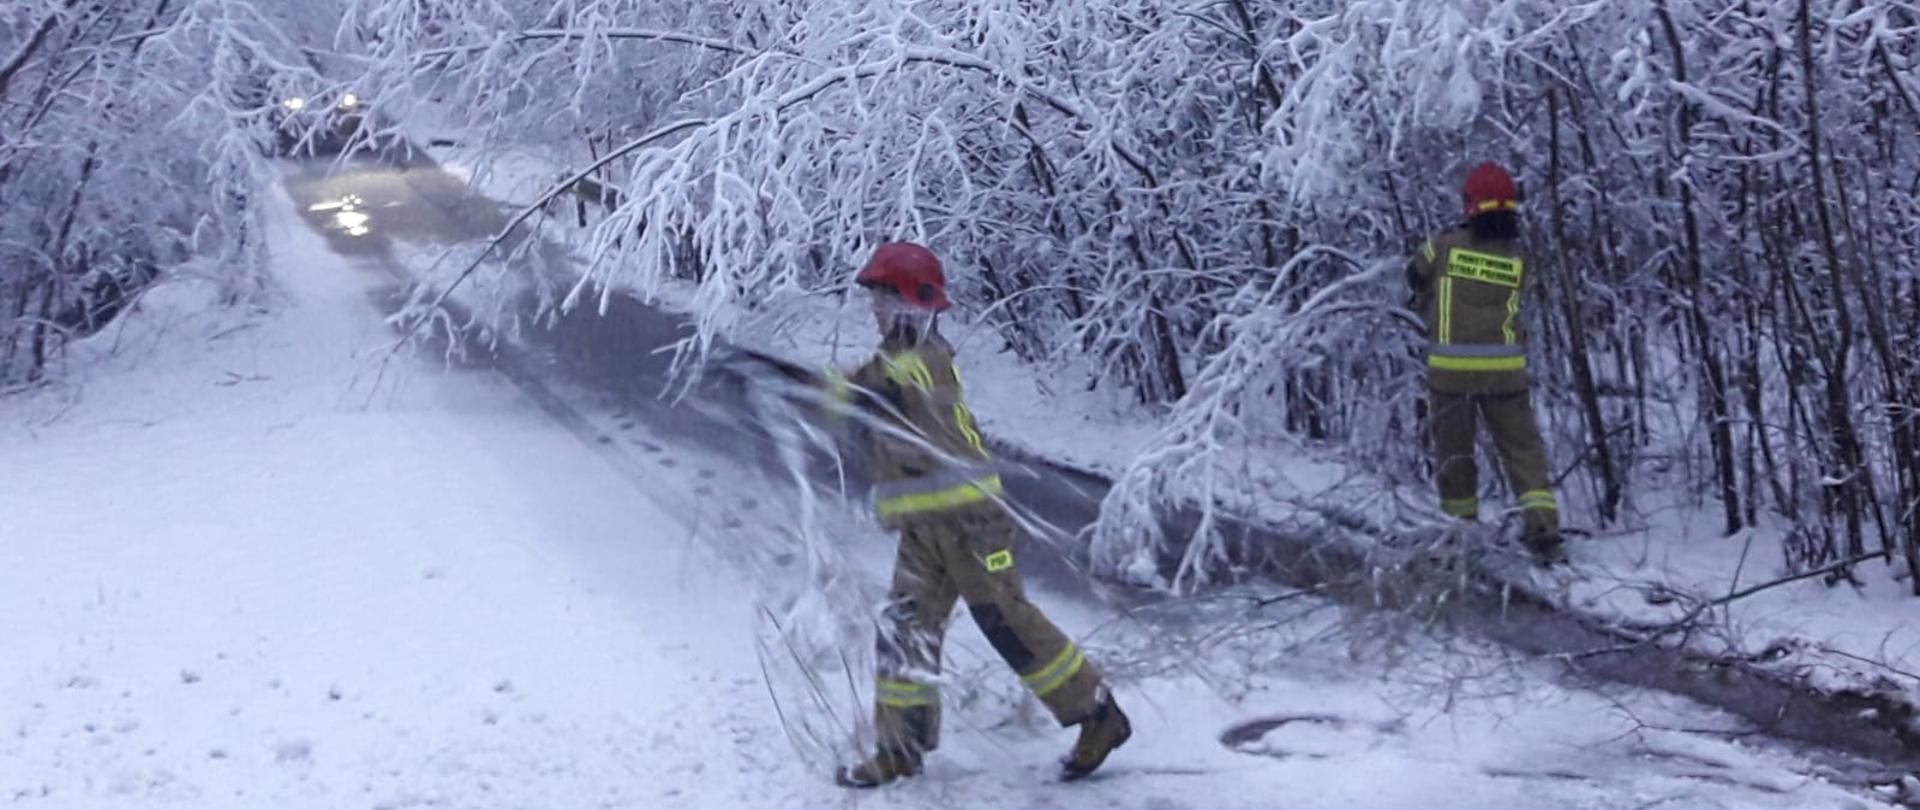 Strażacy usuwają powalone drzewa w wyniku ciężkiego śniegu z drogi.